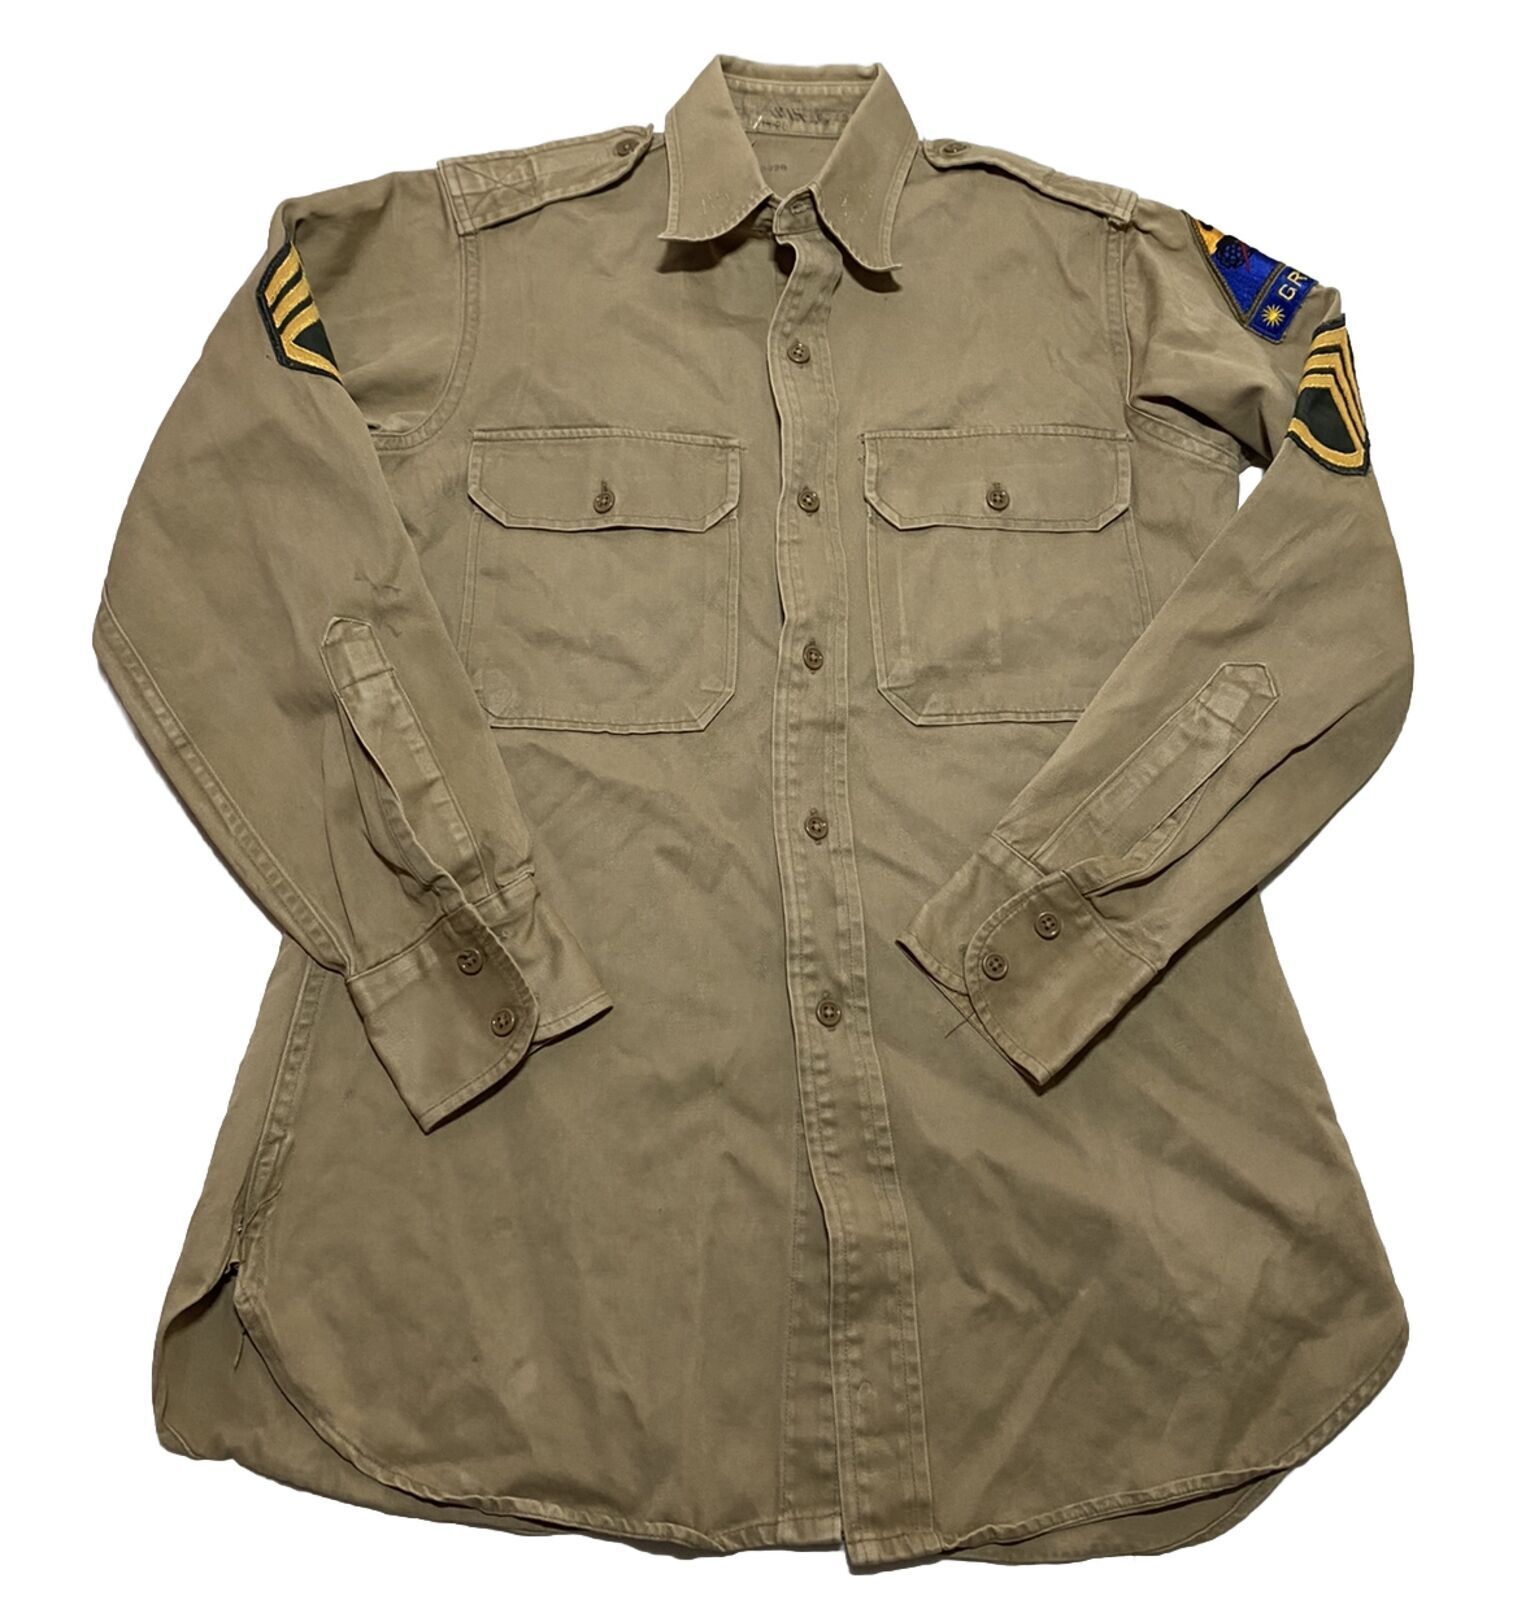 Vintage WW2 U.S. Military Khaki Uniform Shirt 20x30 Y6